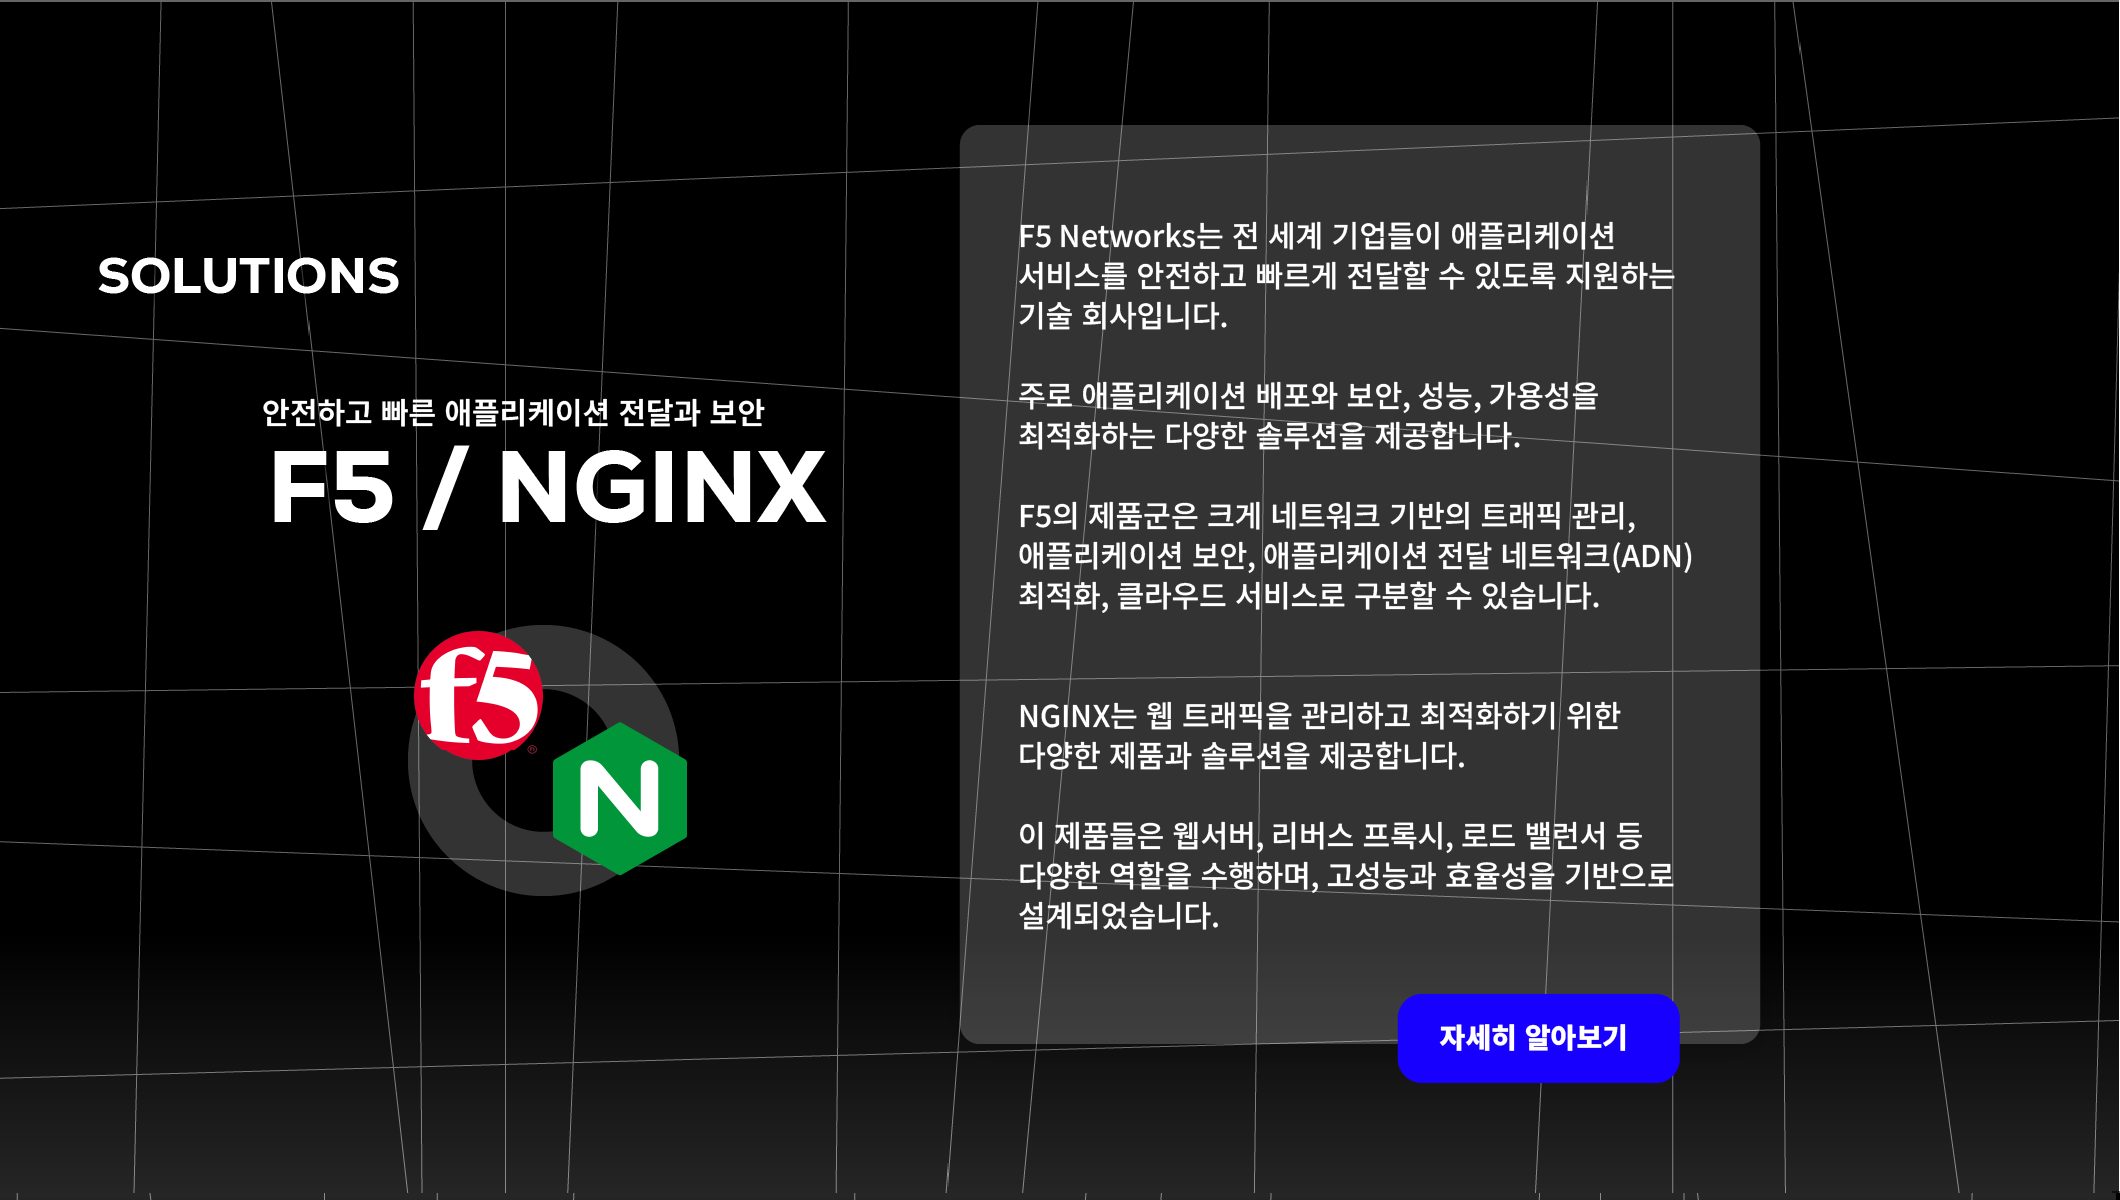 F5 & NGINX main